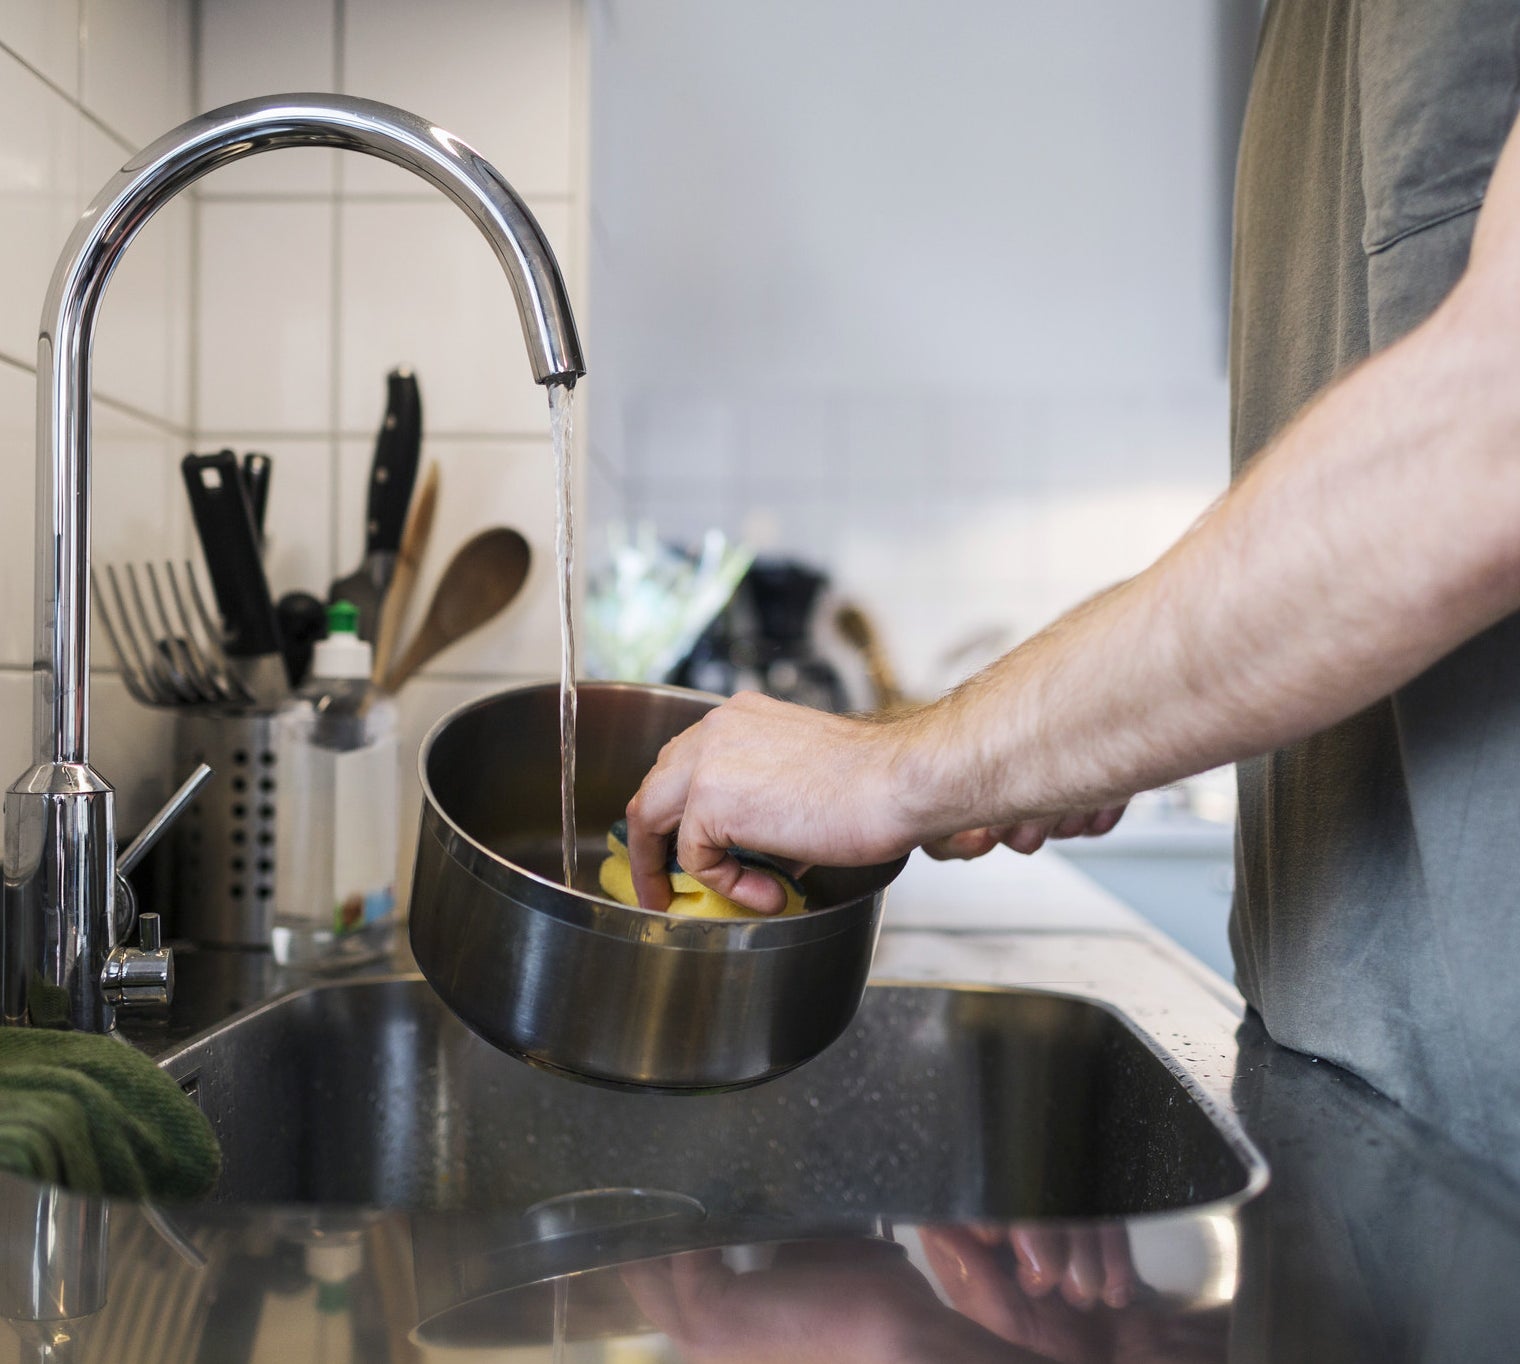 man washing sauce pan with sponge at sink.